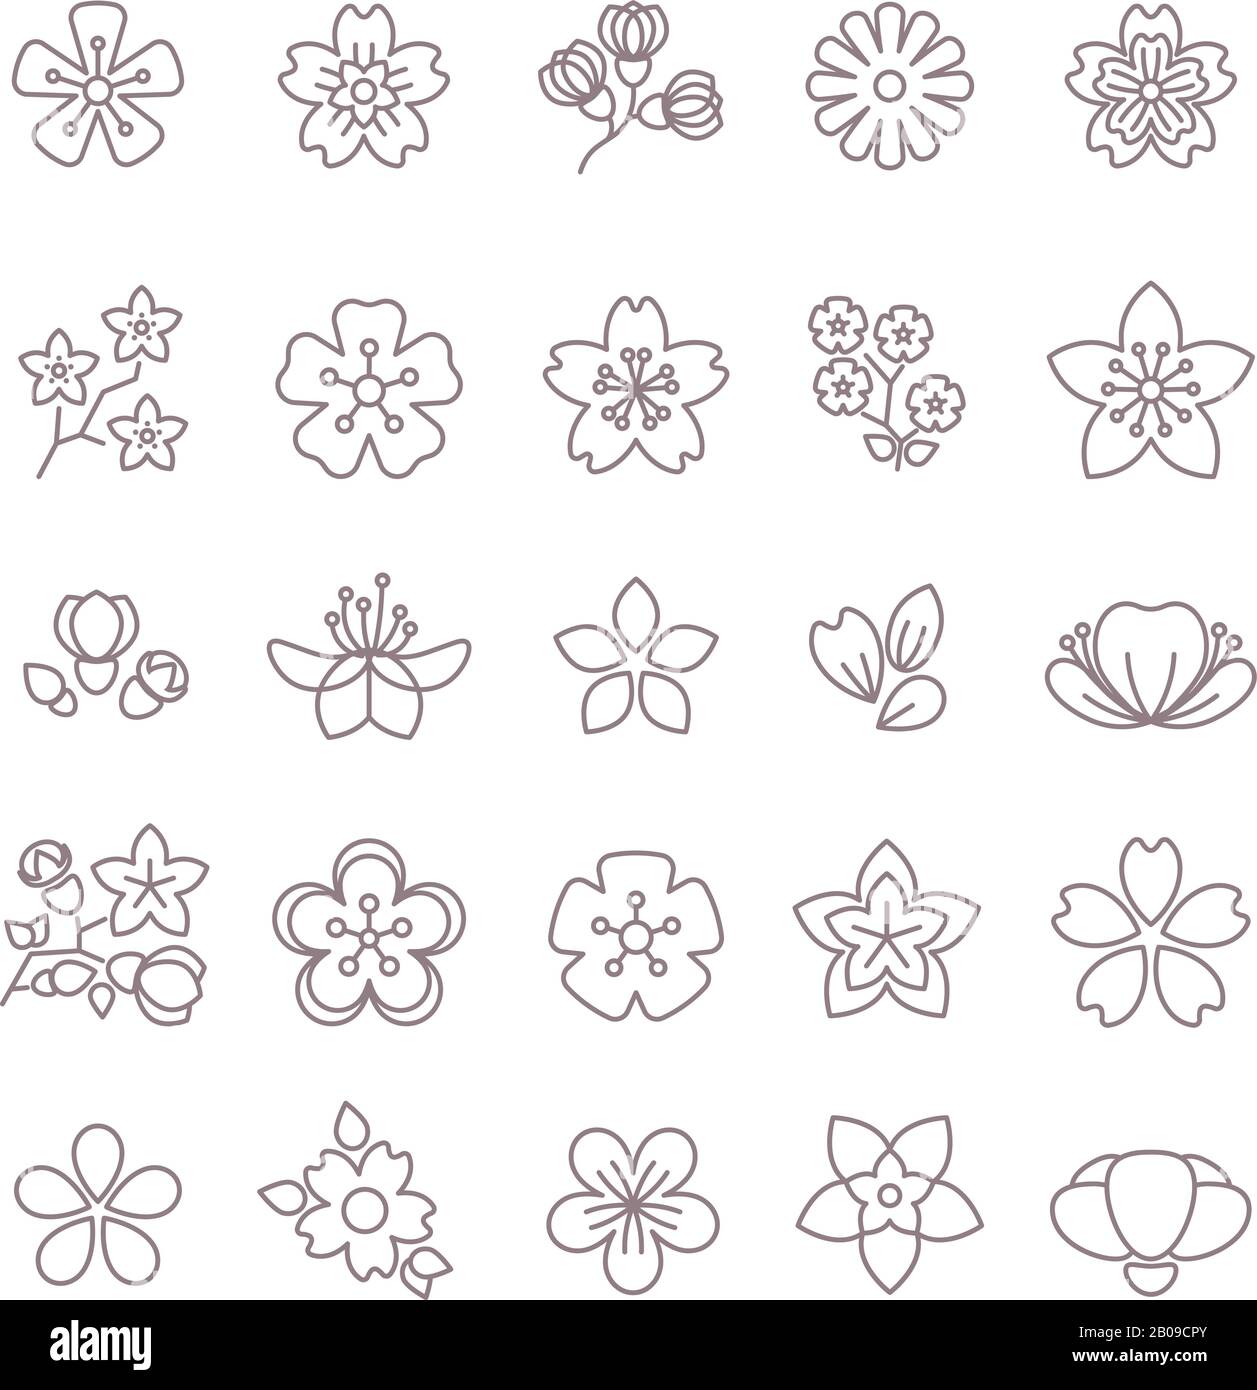 Die dünnen Linien der Frühlingsblume sind mit Vektorsymbolen versehen. Blumenblume mit Blütenblatt, Sammlung von Blumen Illustration Stock Vektor